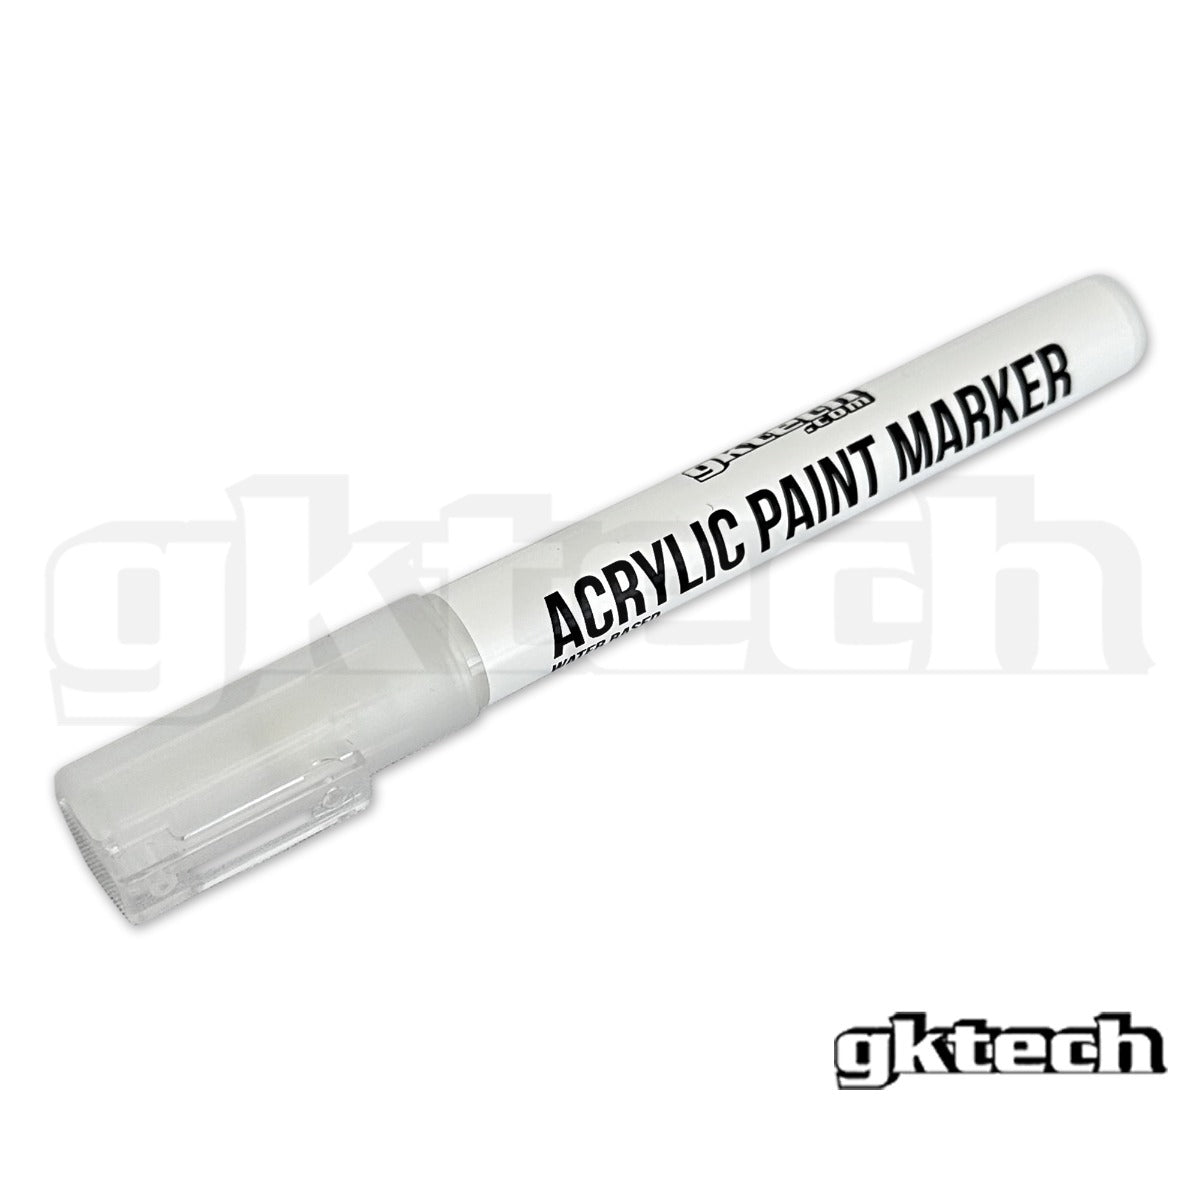 Paint marker pen